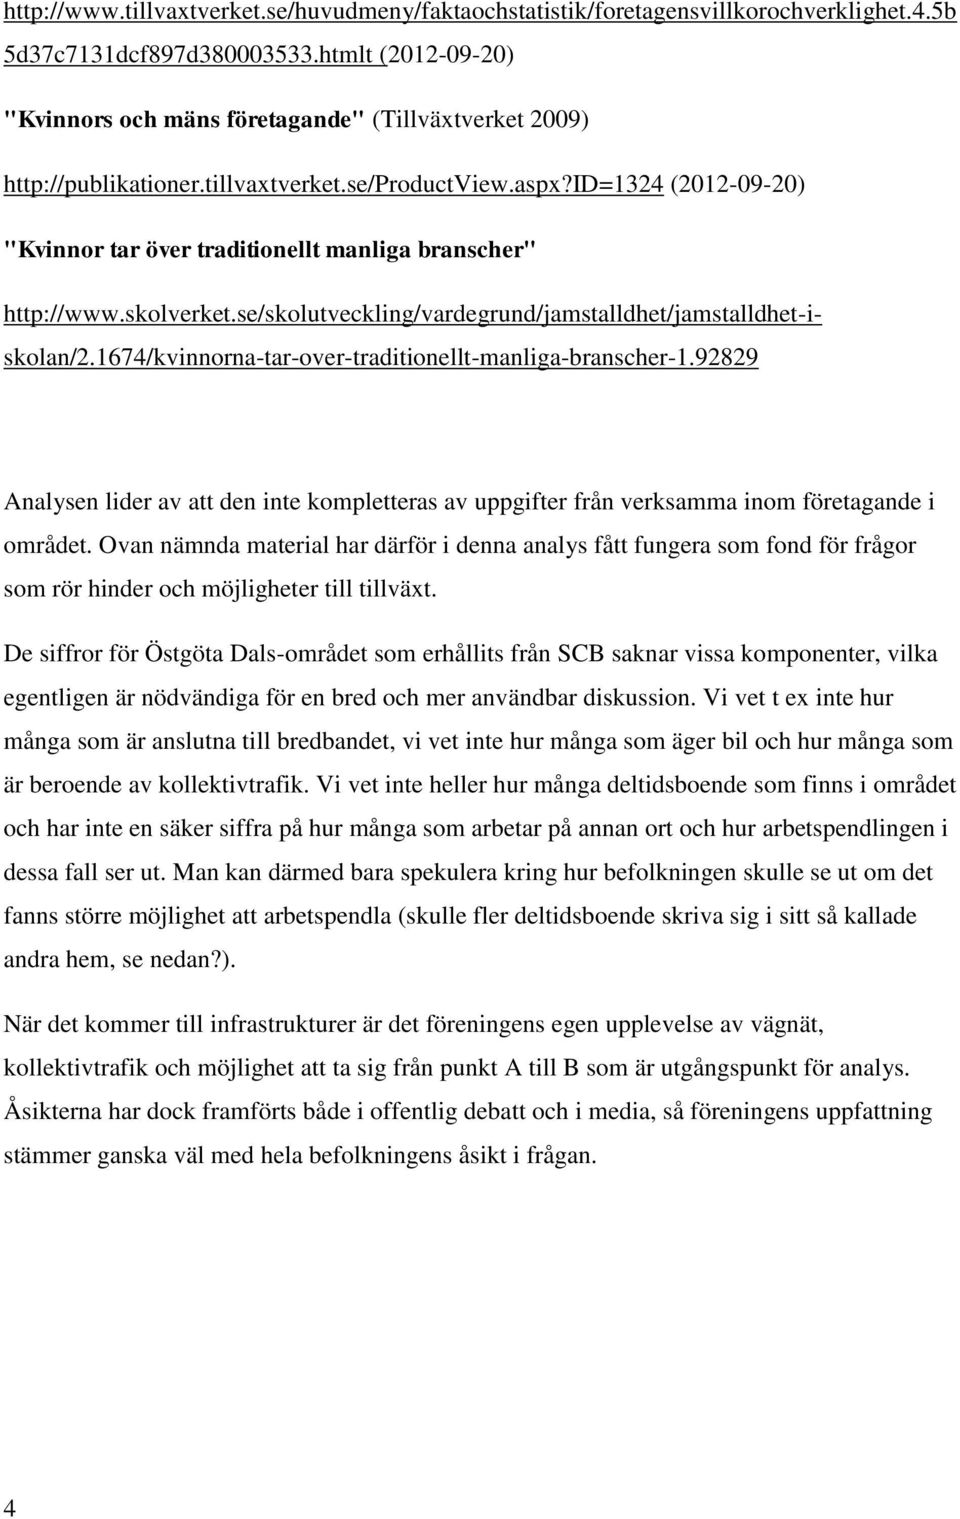 id=1324 (2012-09-20) "Kvinnor tar över traditionellt manliga branscher" http://www.skolverket.se/skolutveckling/vardegrund/jamstalldhet/jamstalldhet-iskolan/2.